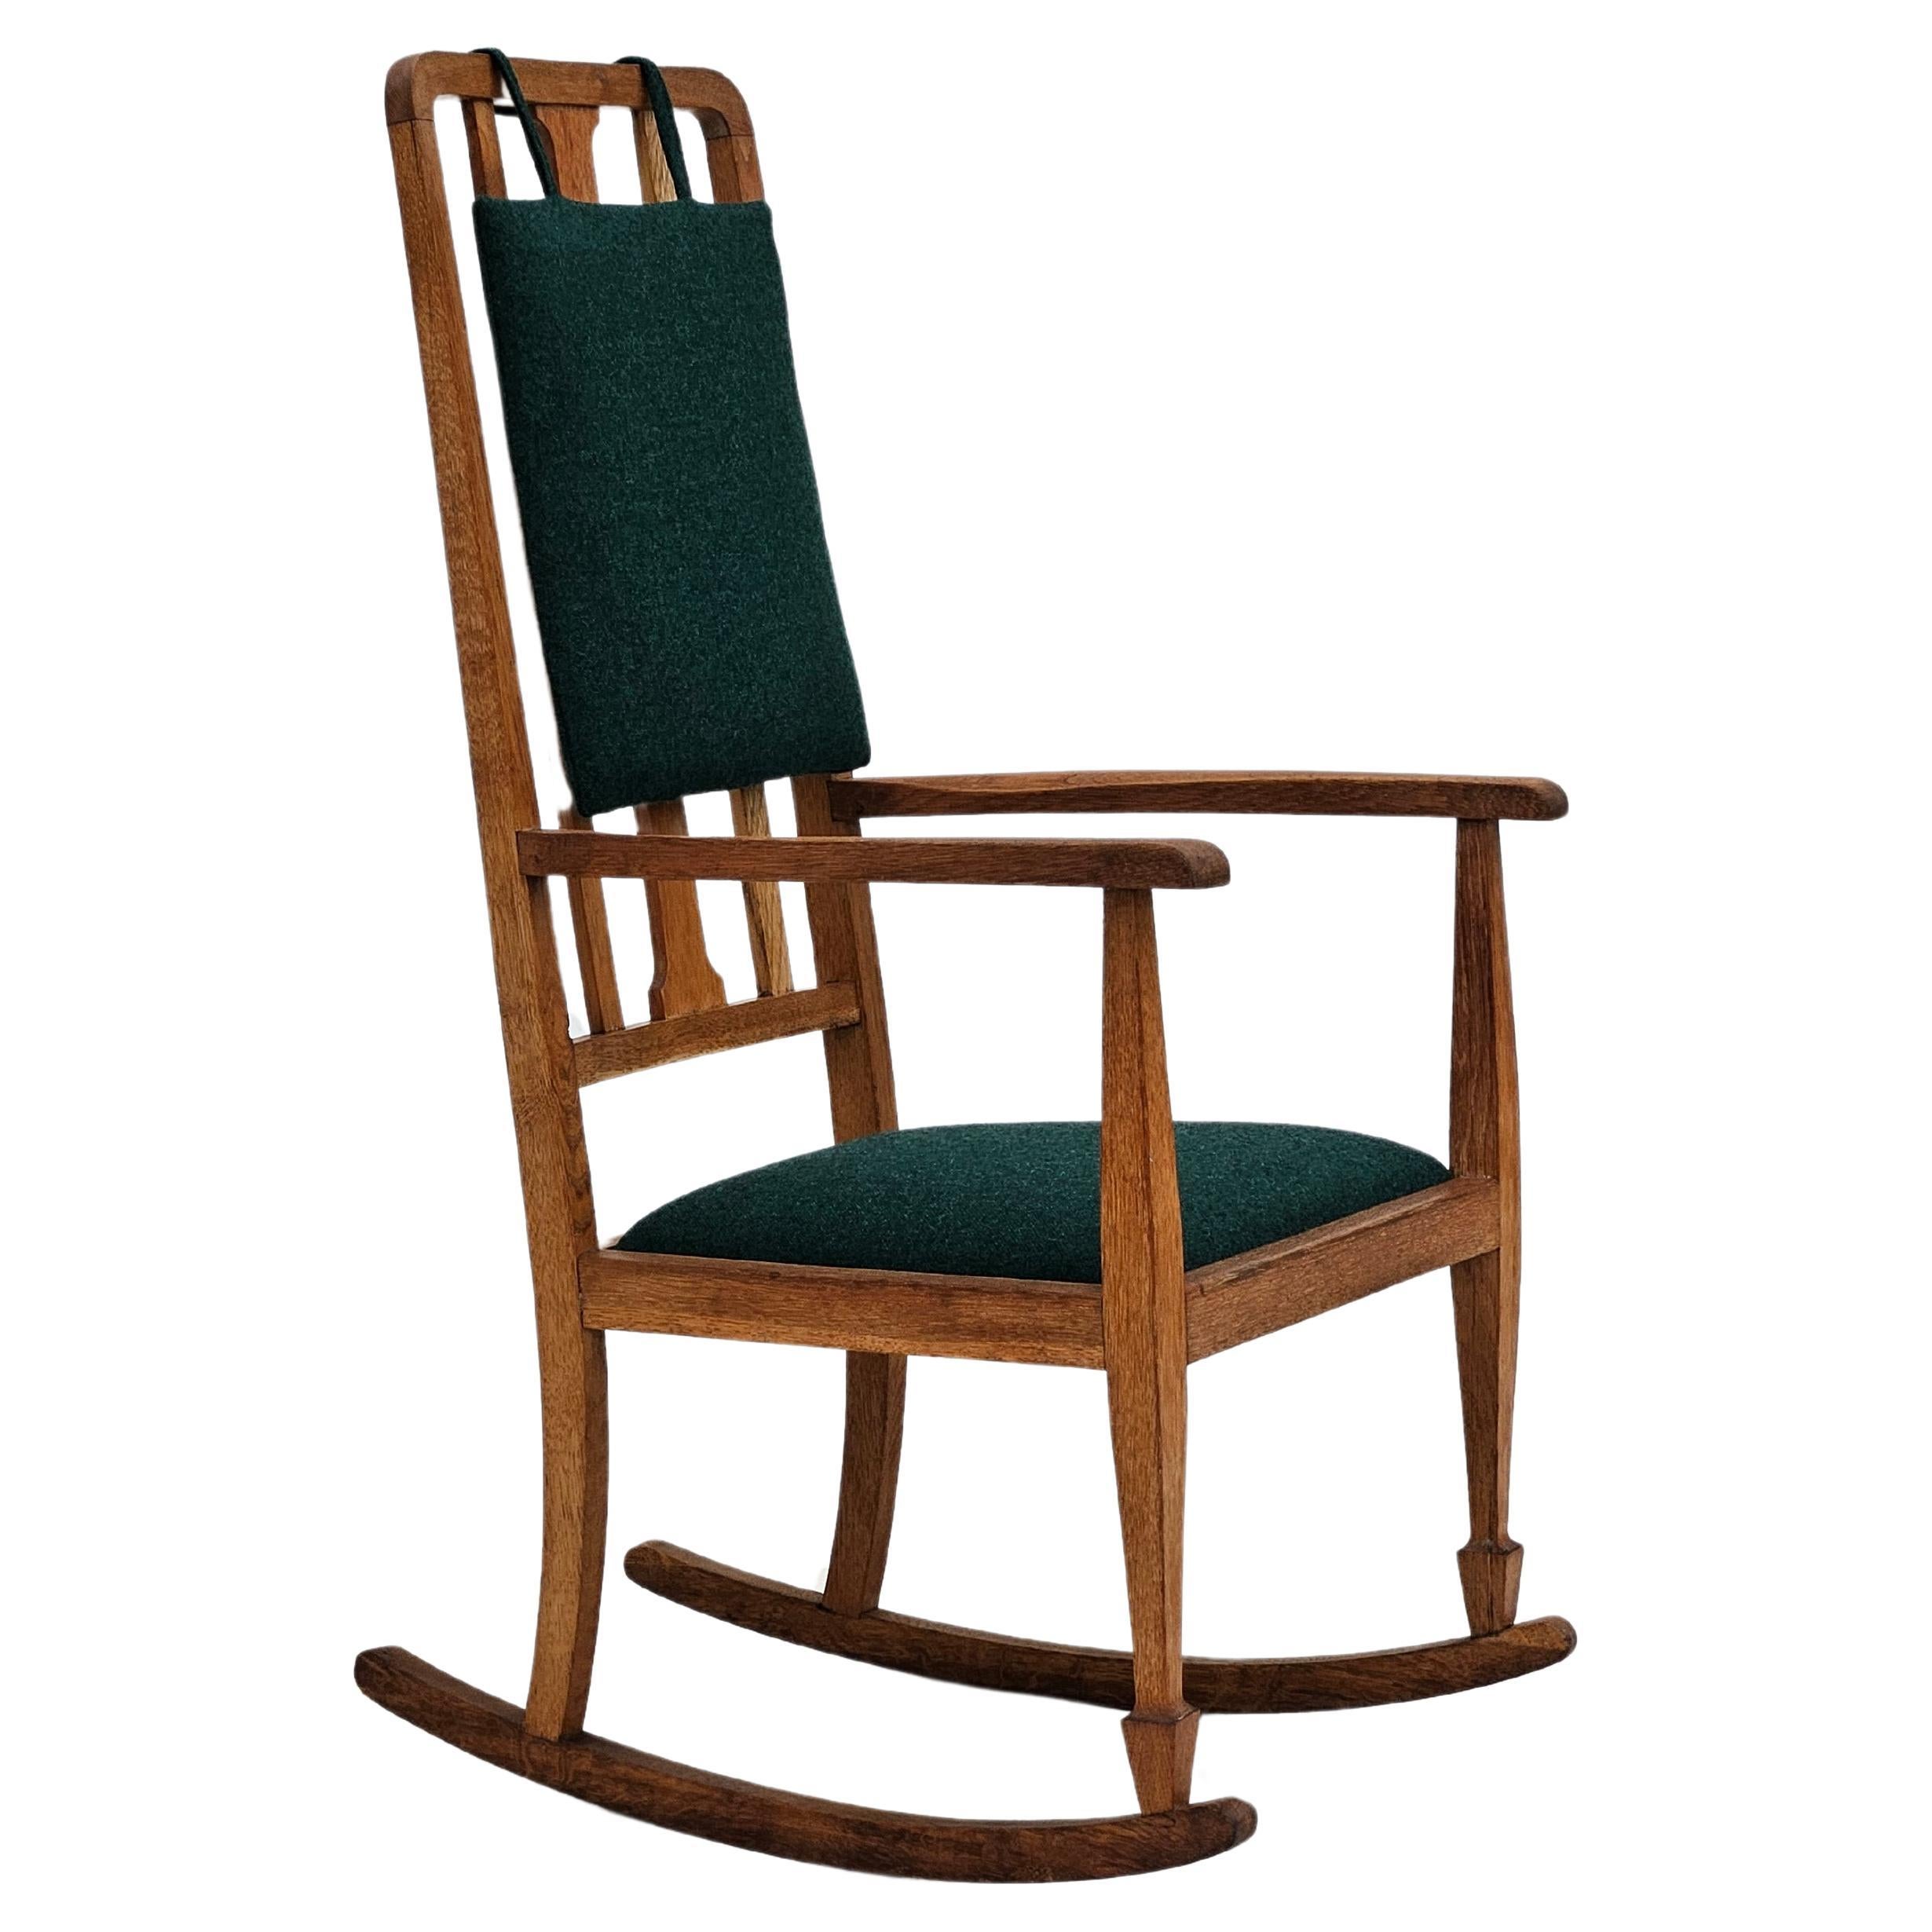 1950-60s, reupholstered Danish highback rocking chair, KVADRAT furniture wool.